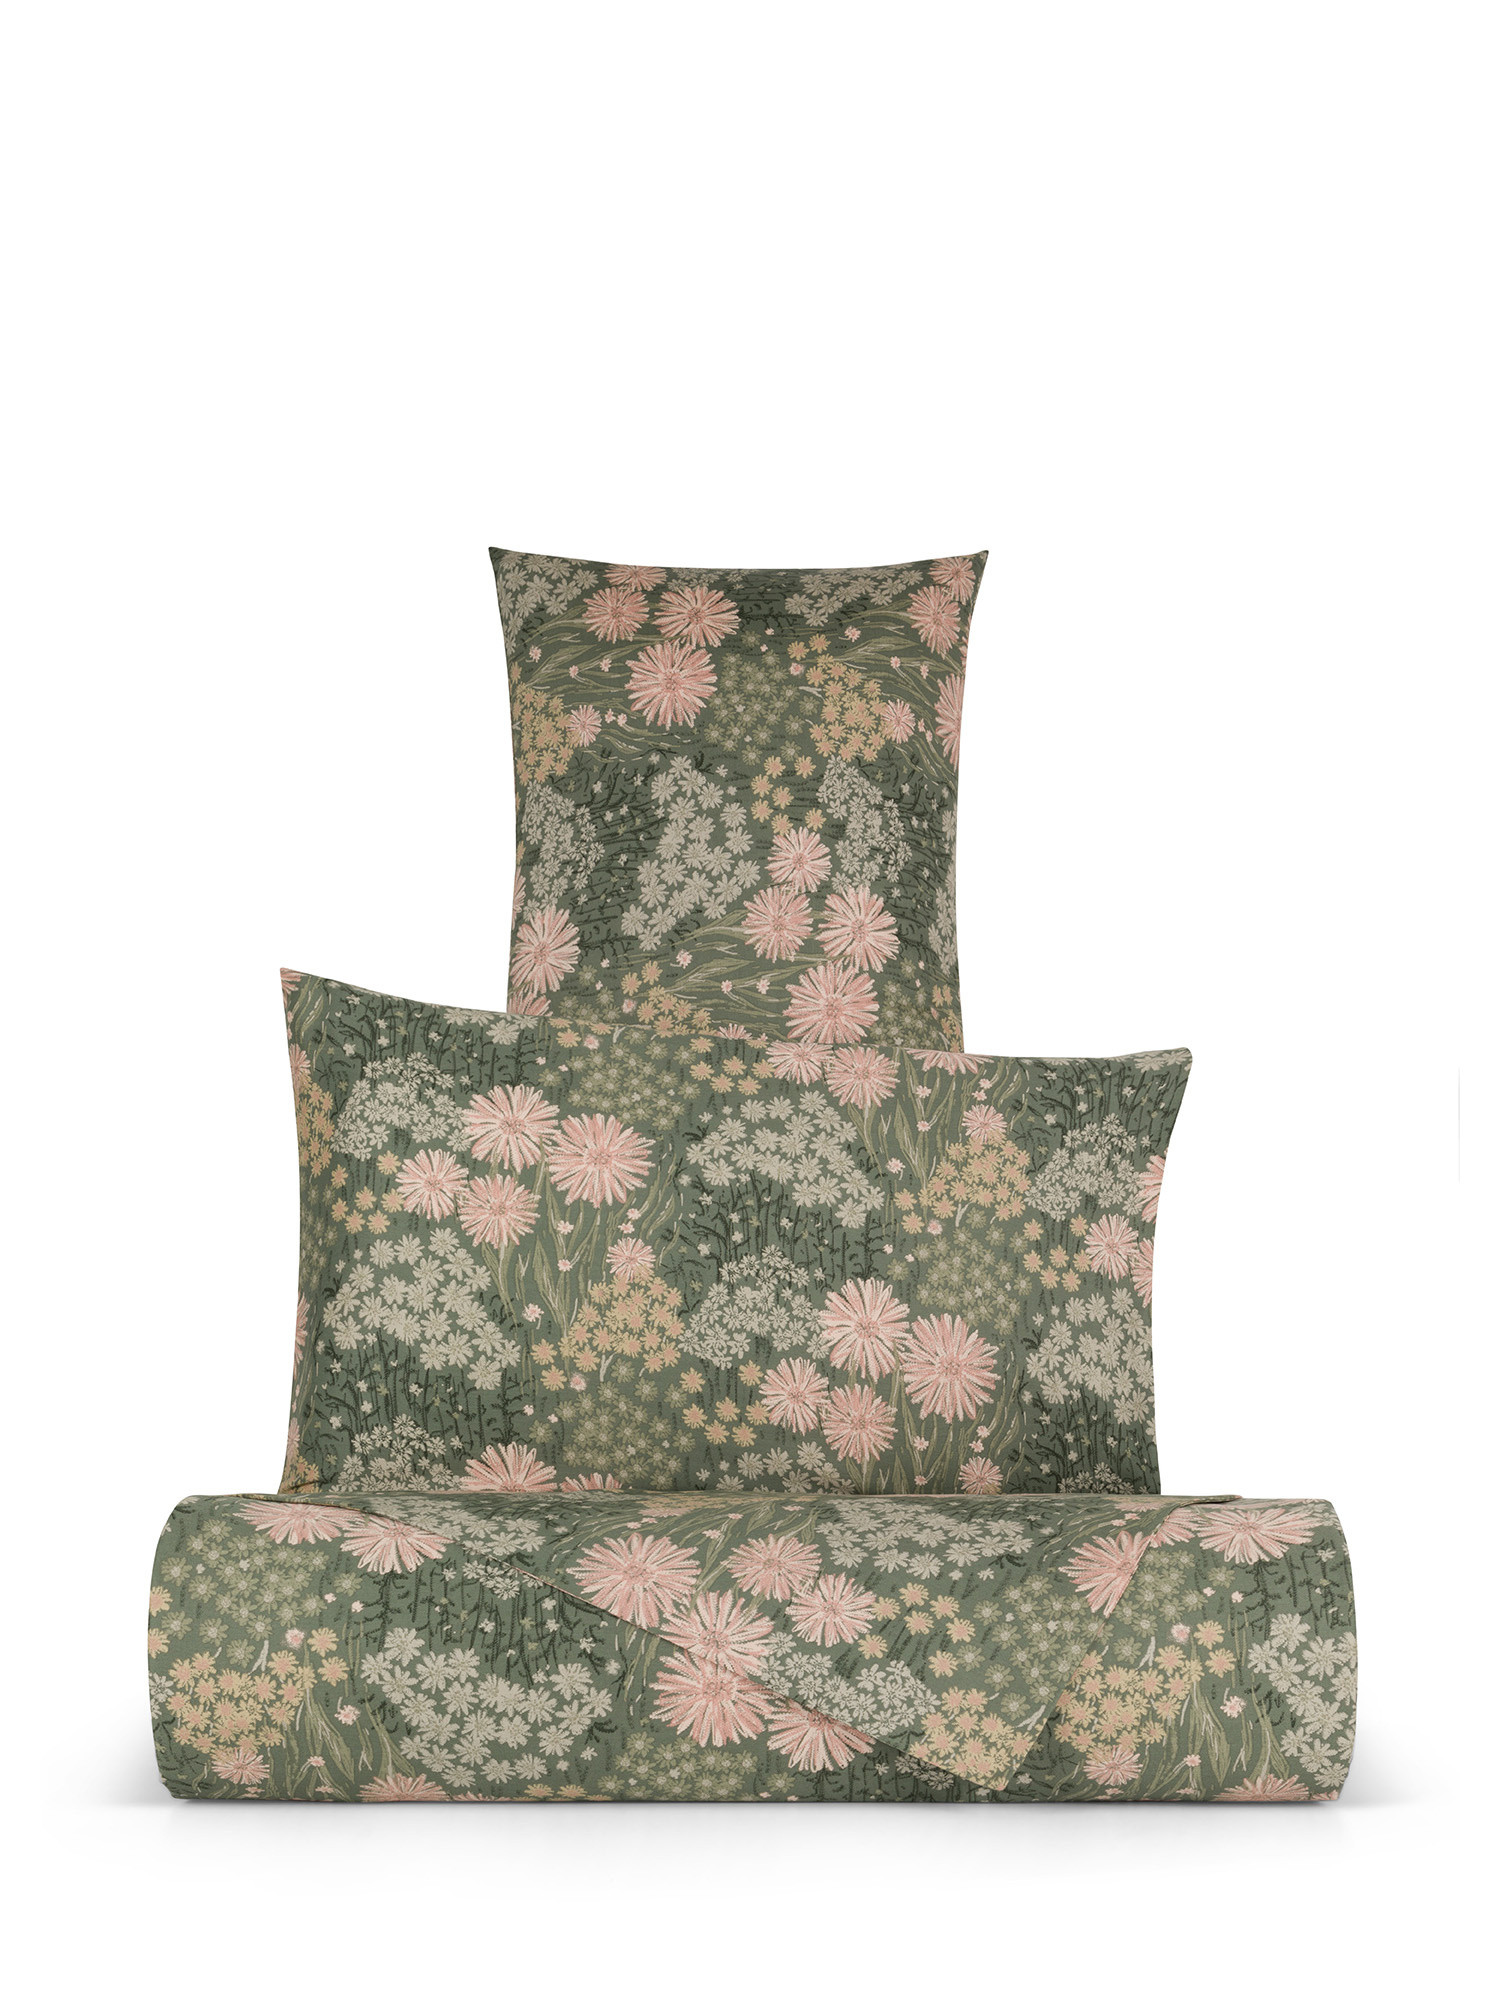 Floral patterned cotton satin duvet cover set, Green, large image number 0